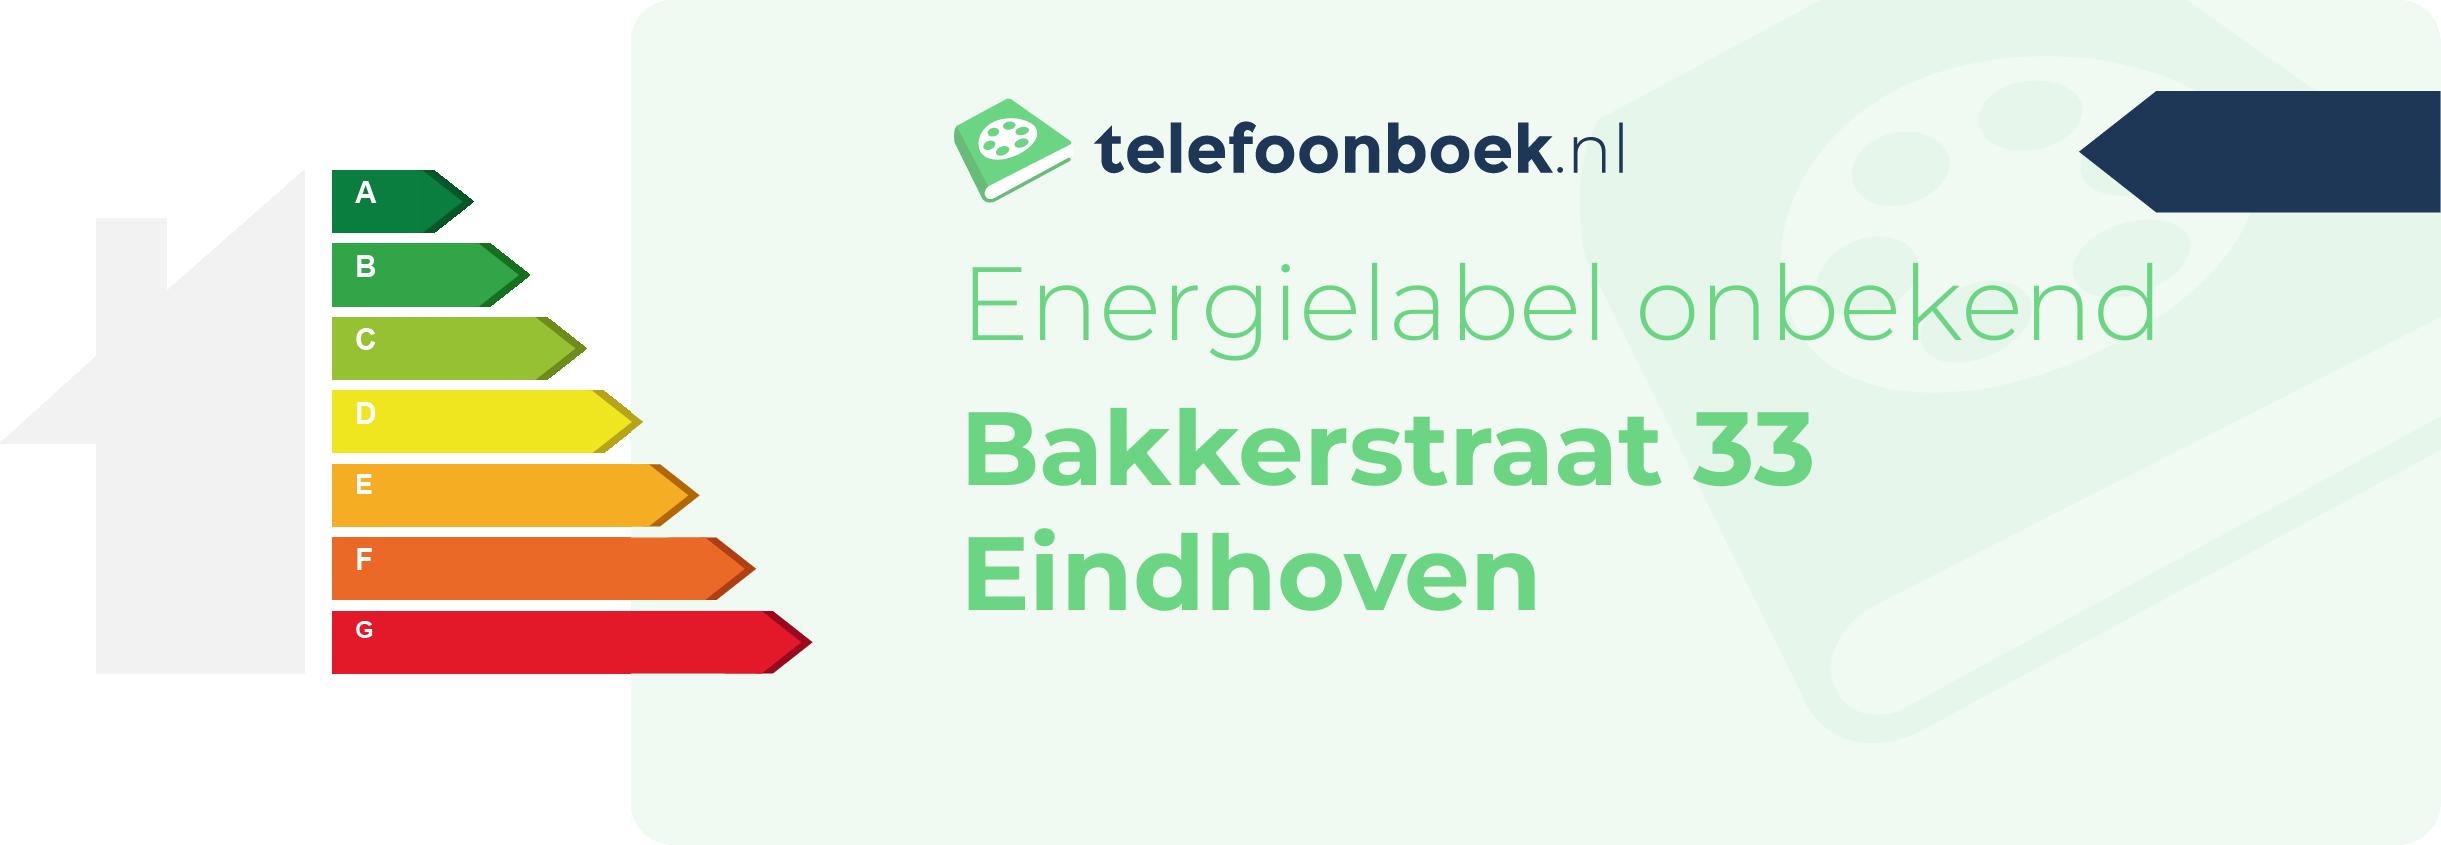 Energielabel Bakkerstraat 33 Eindhoven